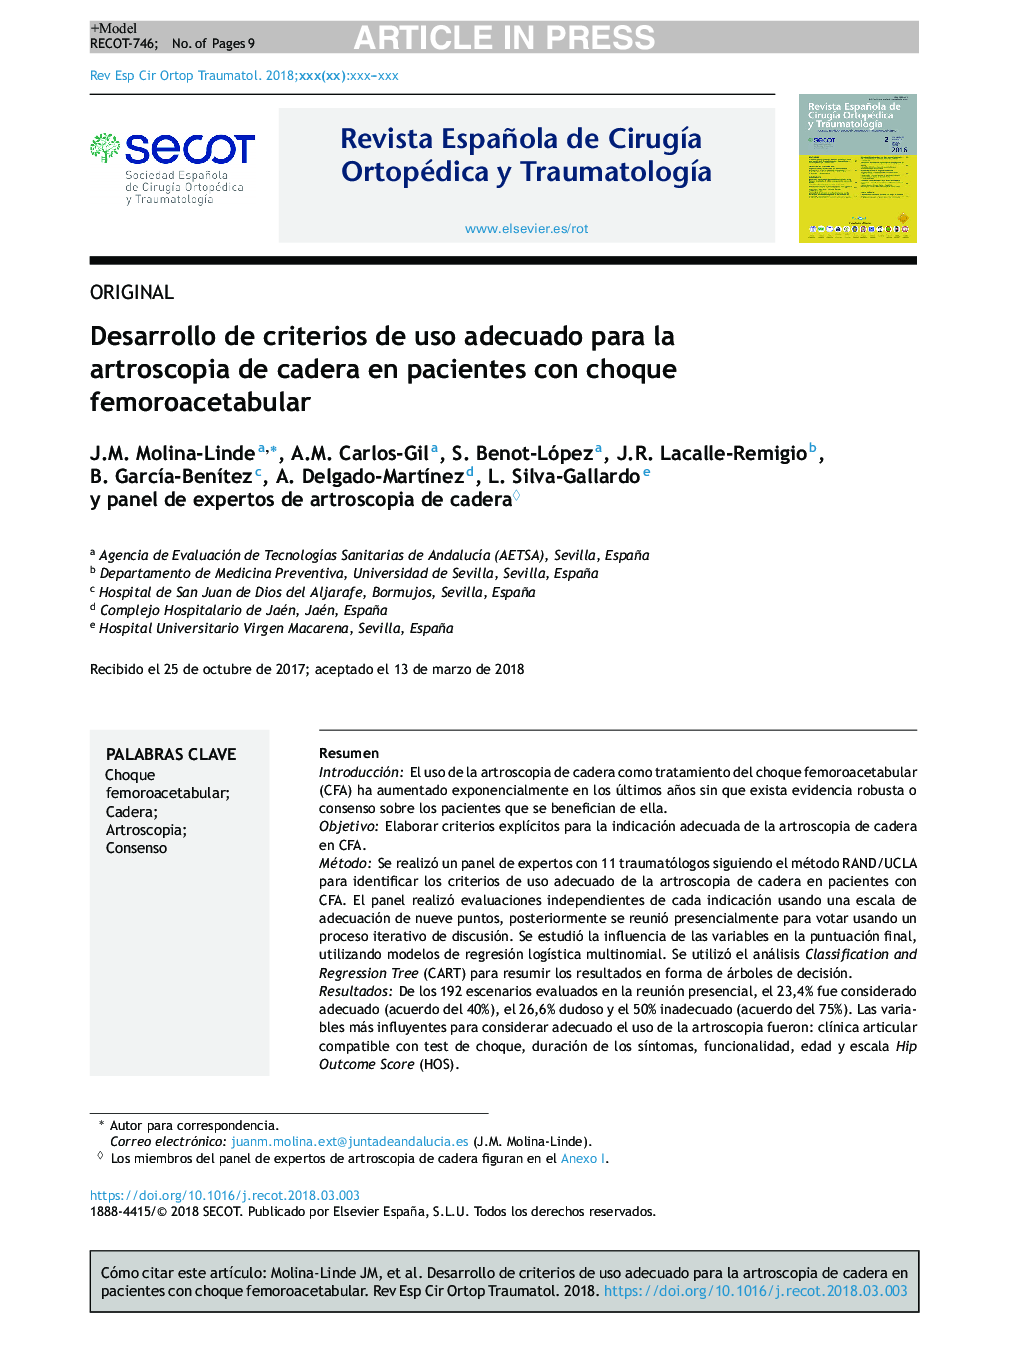 Desarrollo de criterios de uso adecuado para la artroscopia de cadera en pacientes con choque femoroacetabular